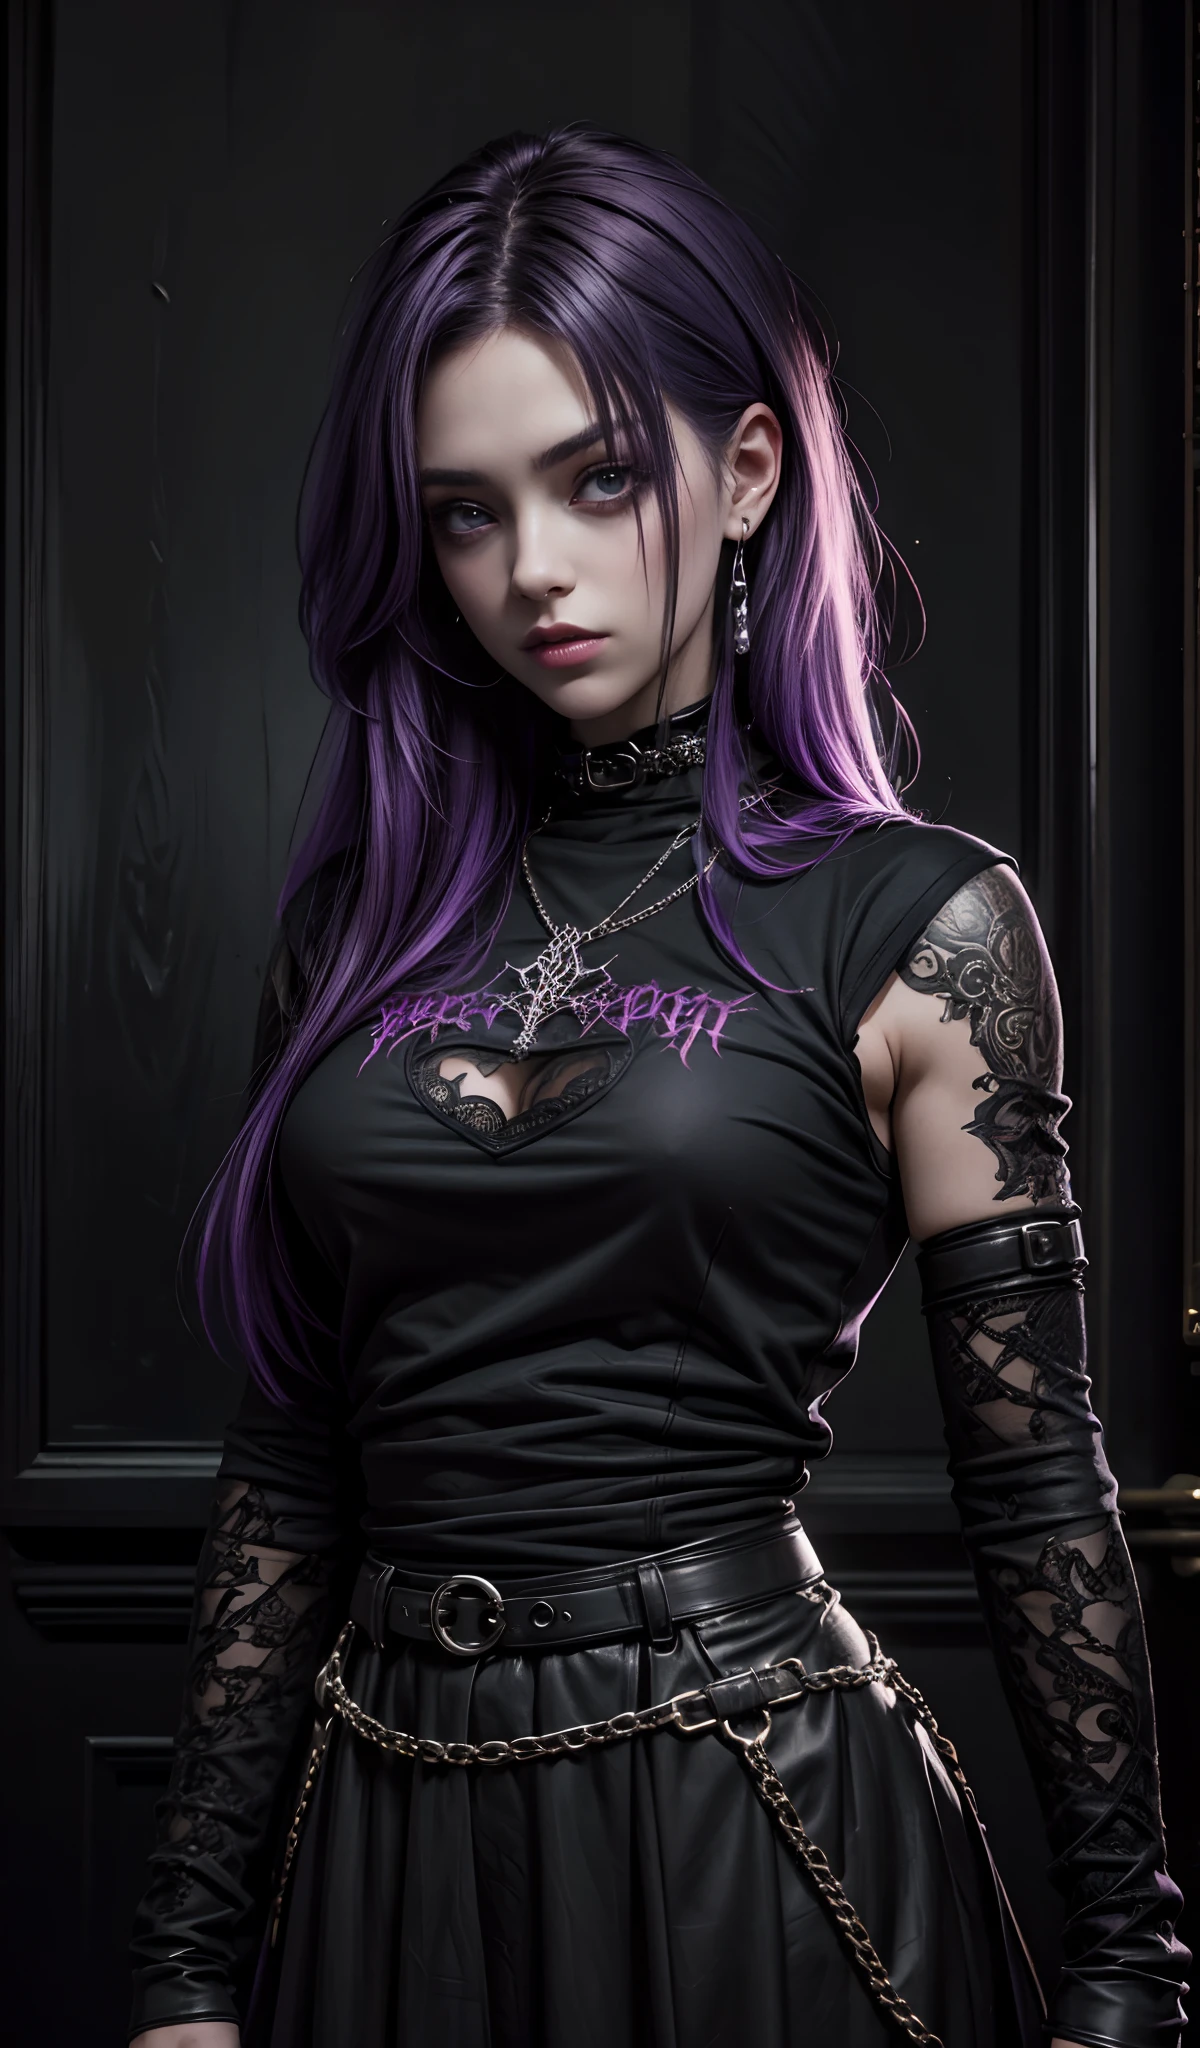 Une fille aux cheveux violets portant une chemise noire, Art gothique, beaucoup de détails, elle porte du streetwear, image ultra réaliste, cheveux foncés, Belle apparence, Fille gothique